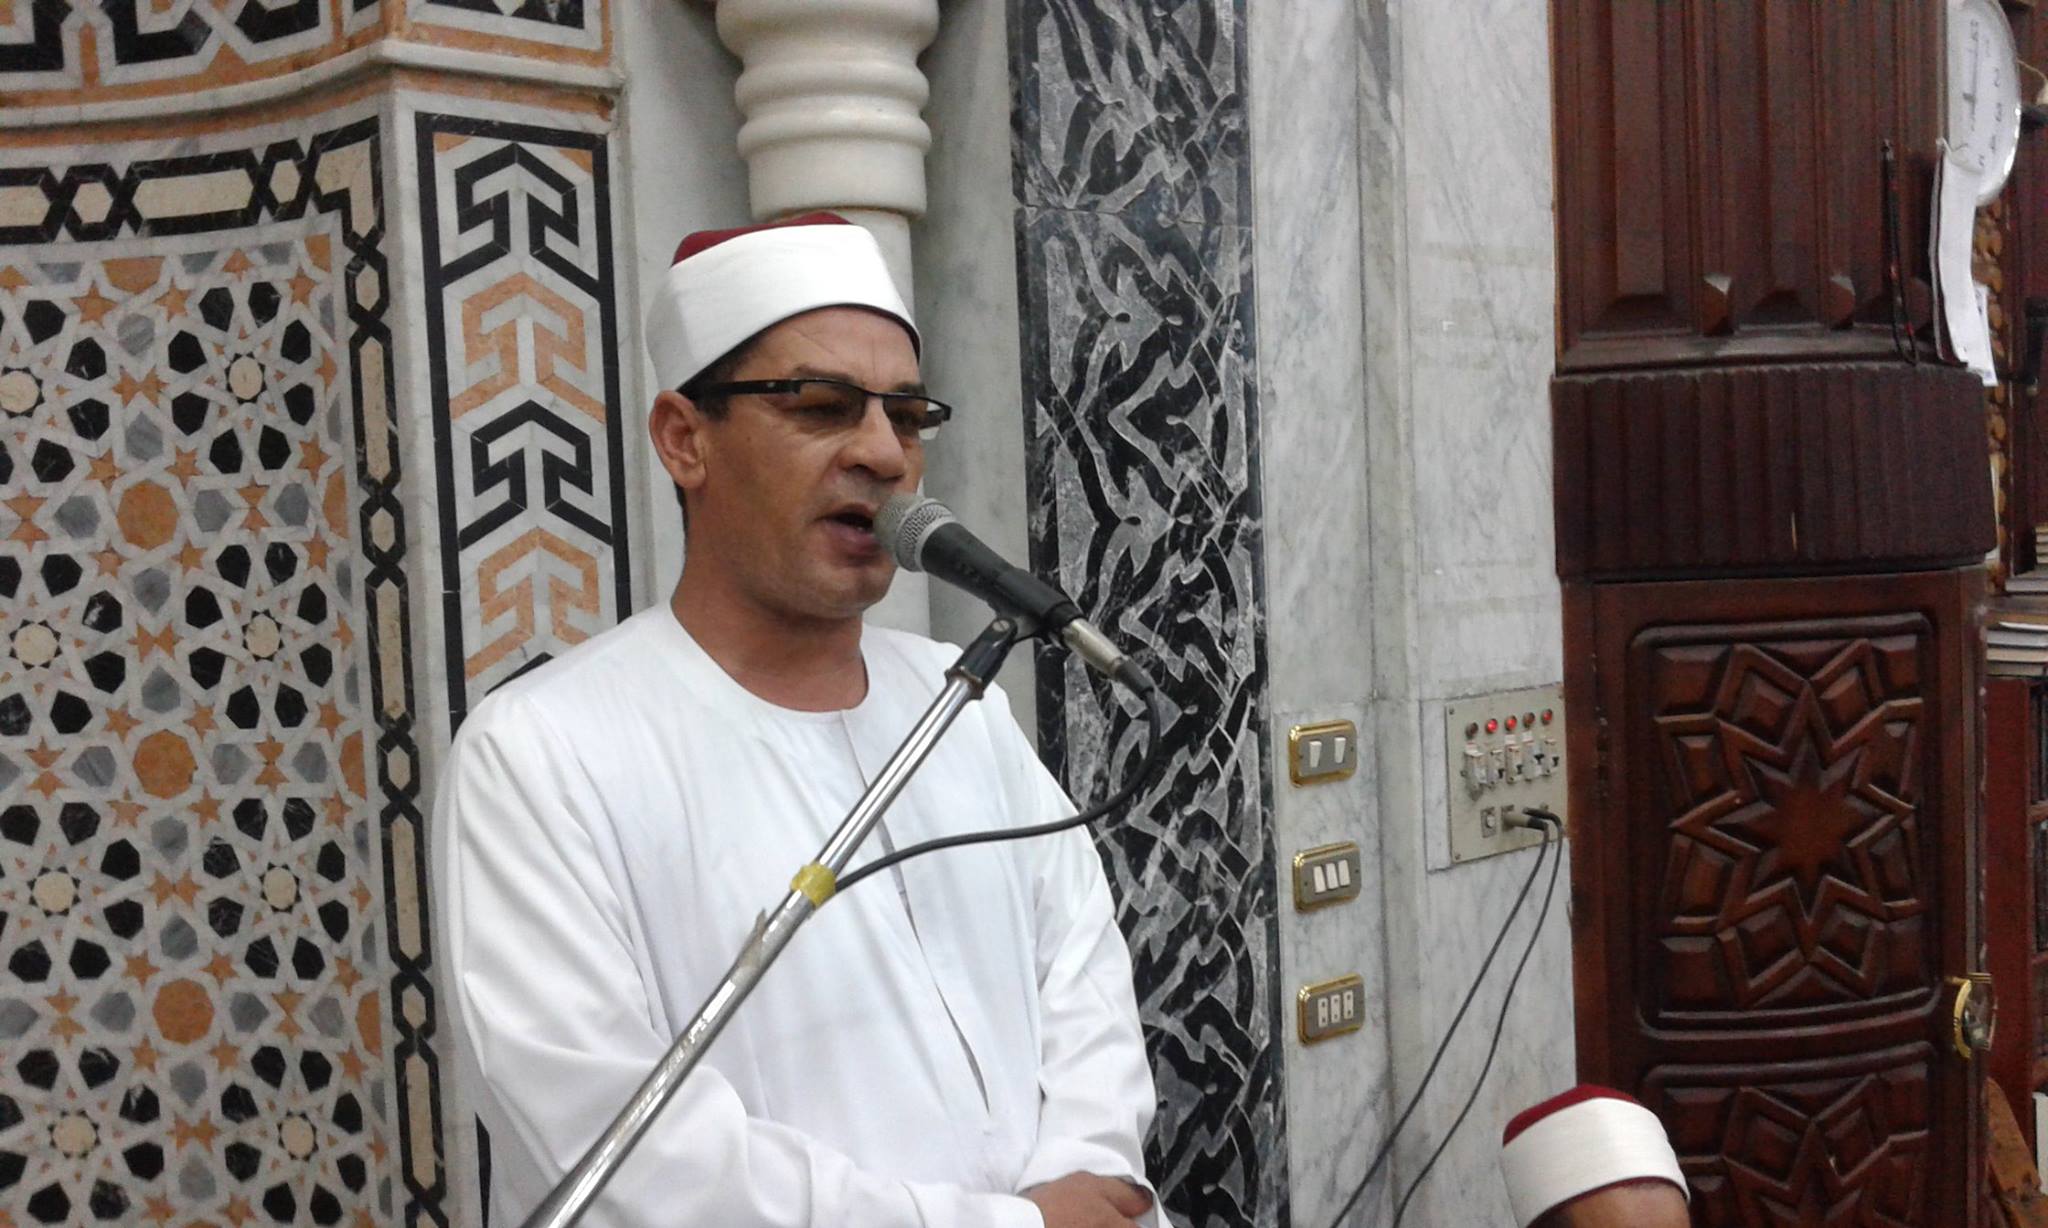  الدعوه إلى الوحدة ونبذ العنف والدفاع عن مقدساتنا خطبة الجمعة بمساجد كفر الشيخ